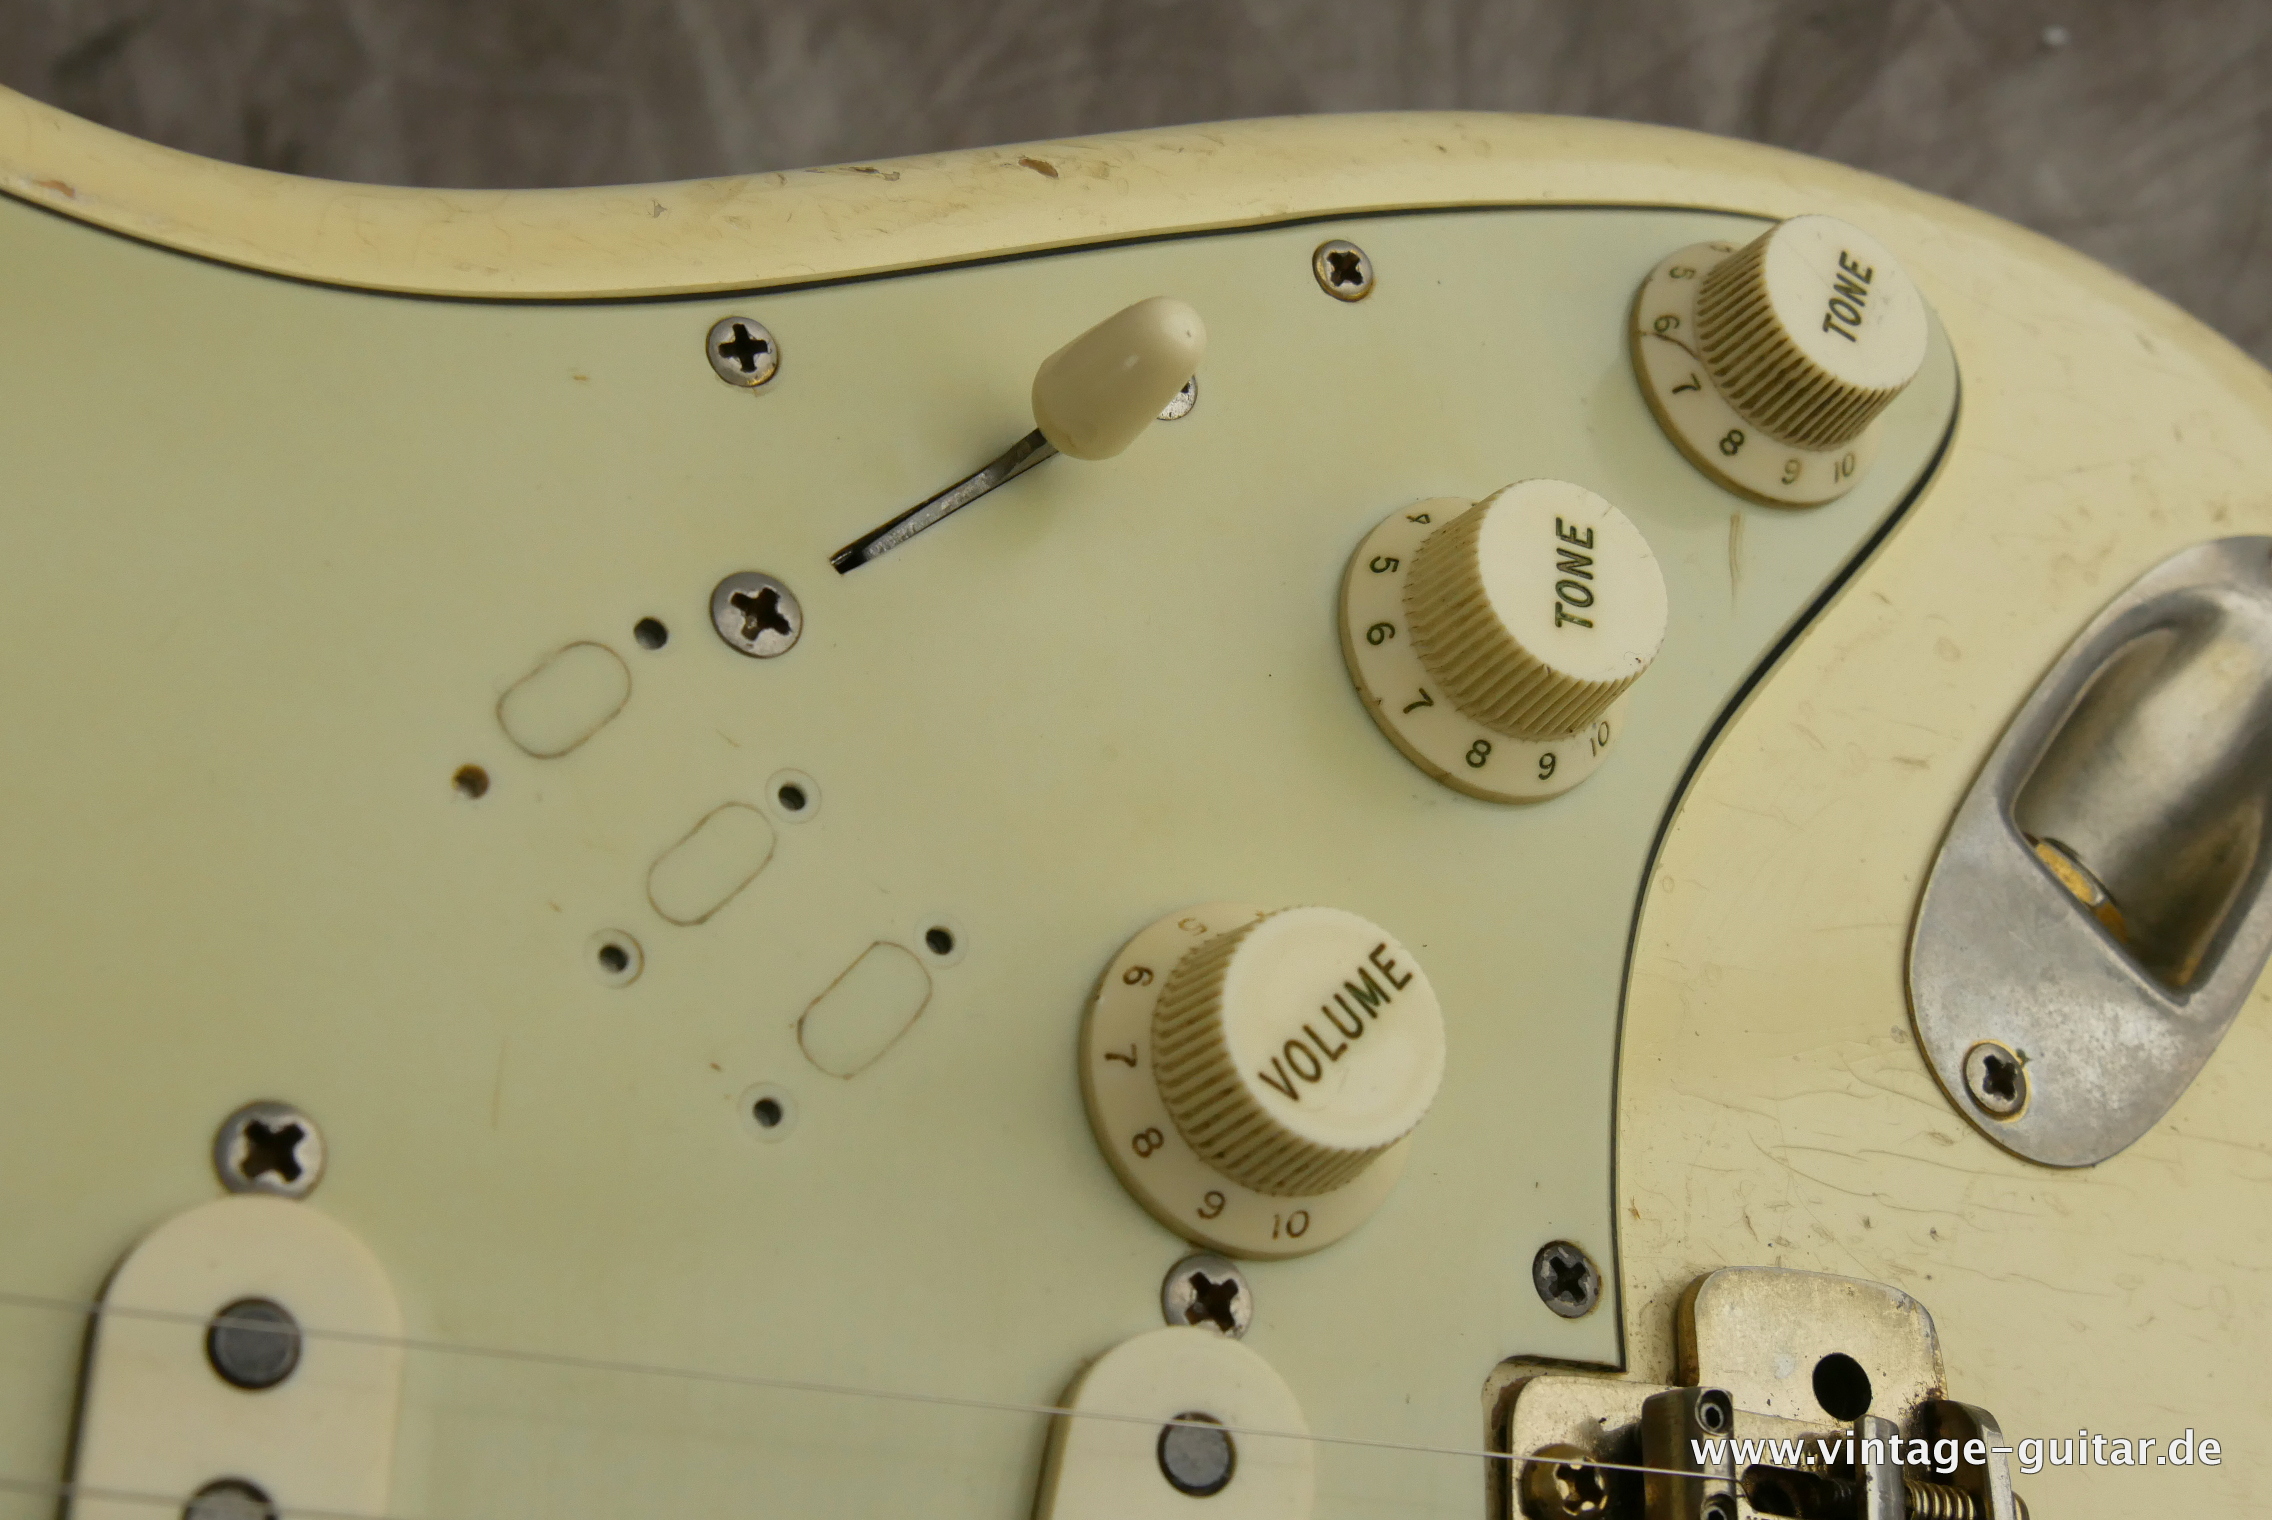 A-Fender-Stratocaster-1964-olympic-white-004.JPG